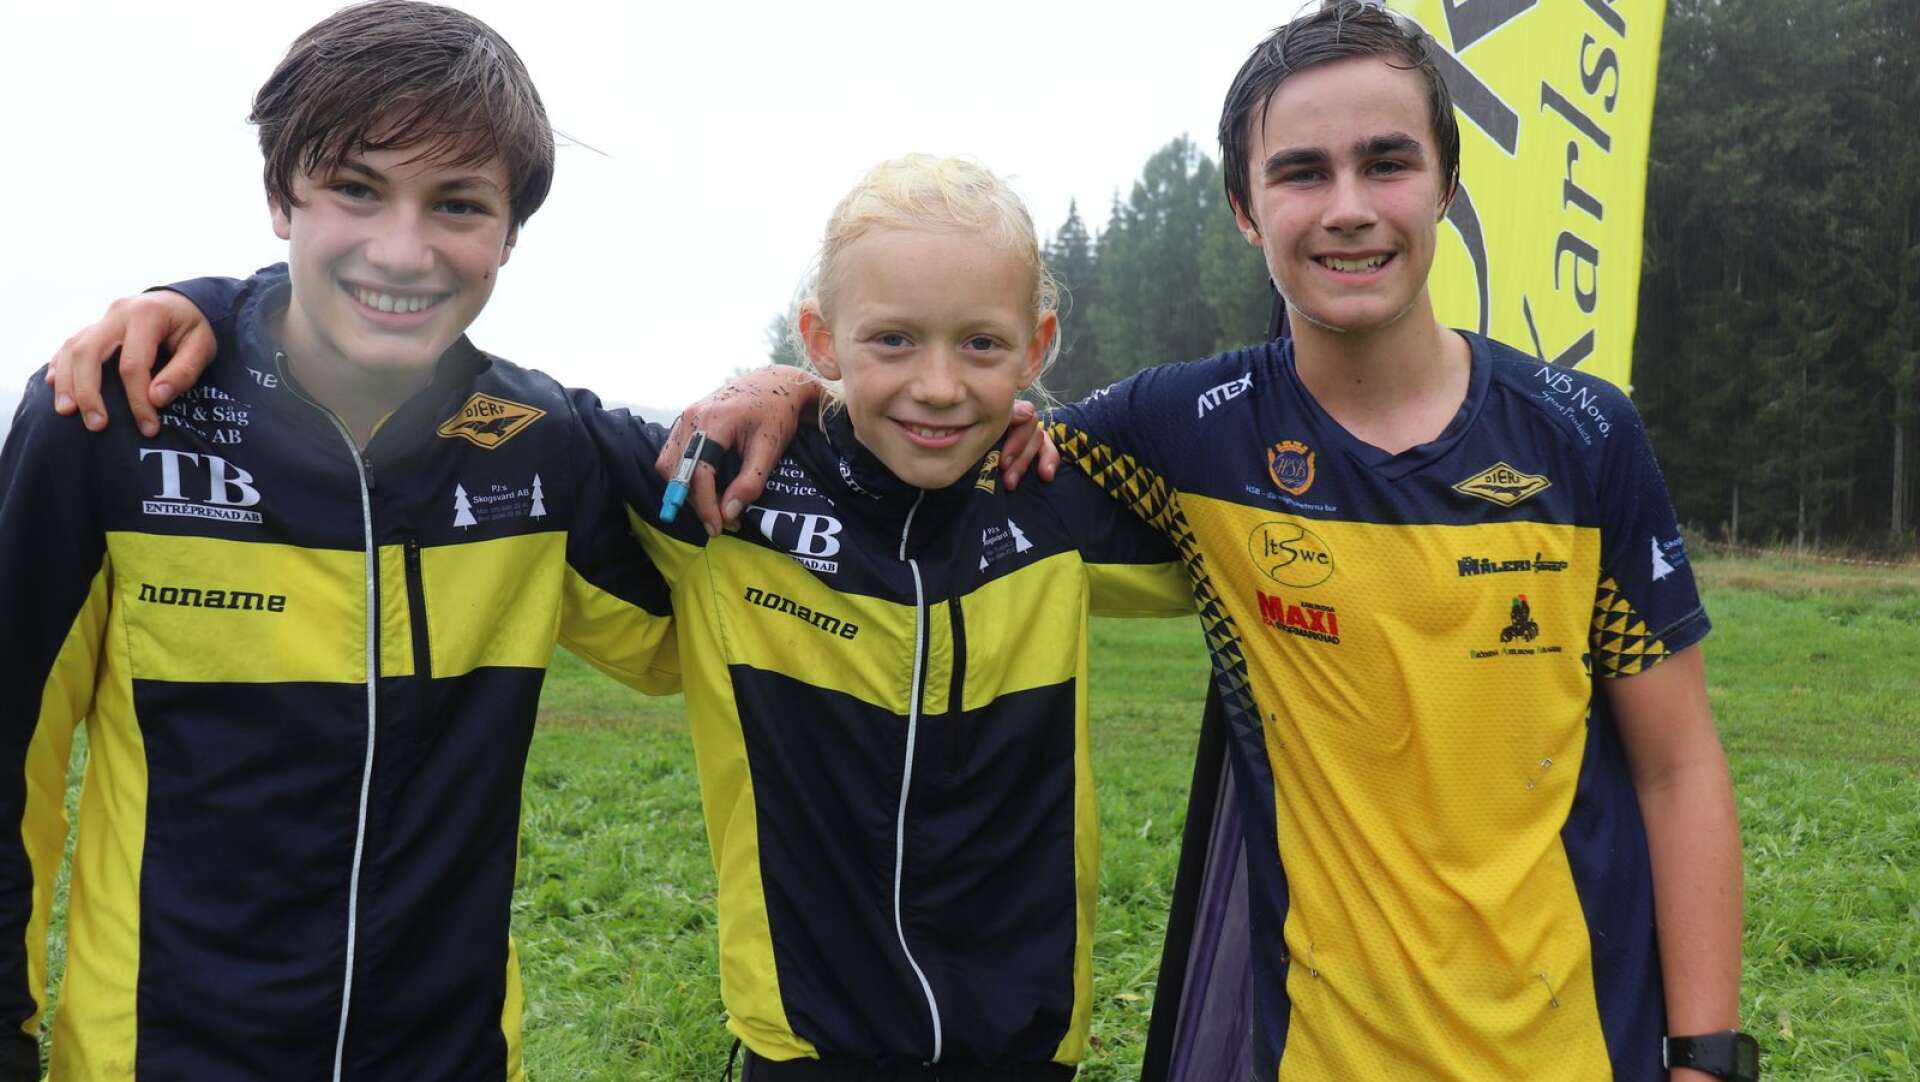 OK Djerf vann H14-klassen, fr v Melvin Thörshagen, Edvard Pelander och Arvid Johansson.